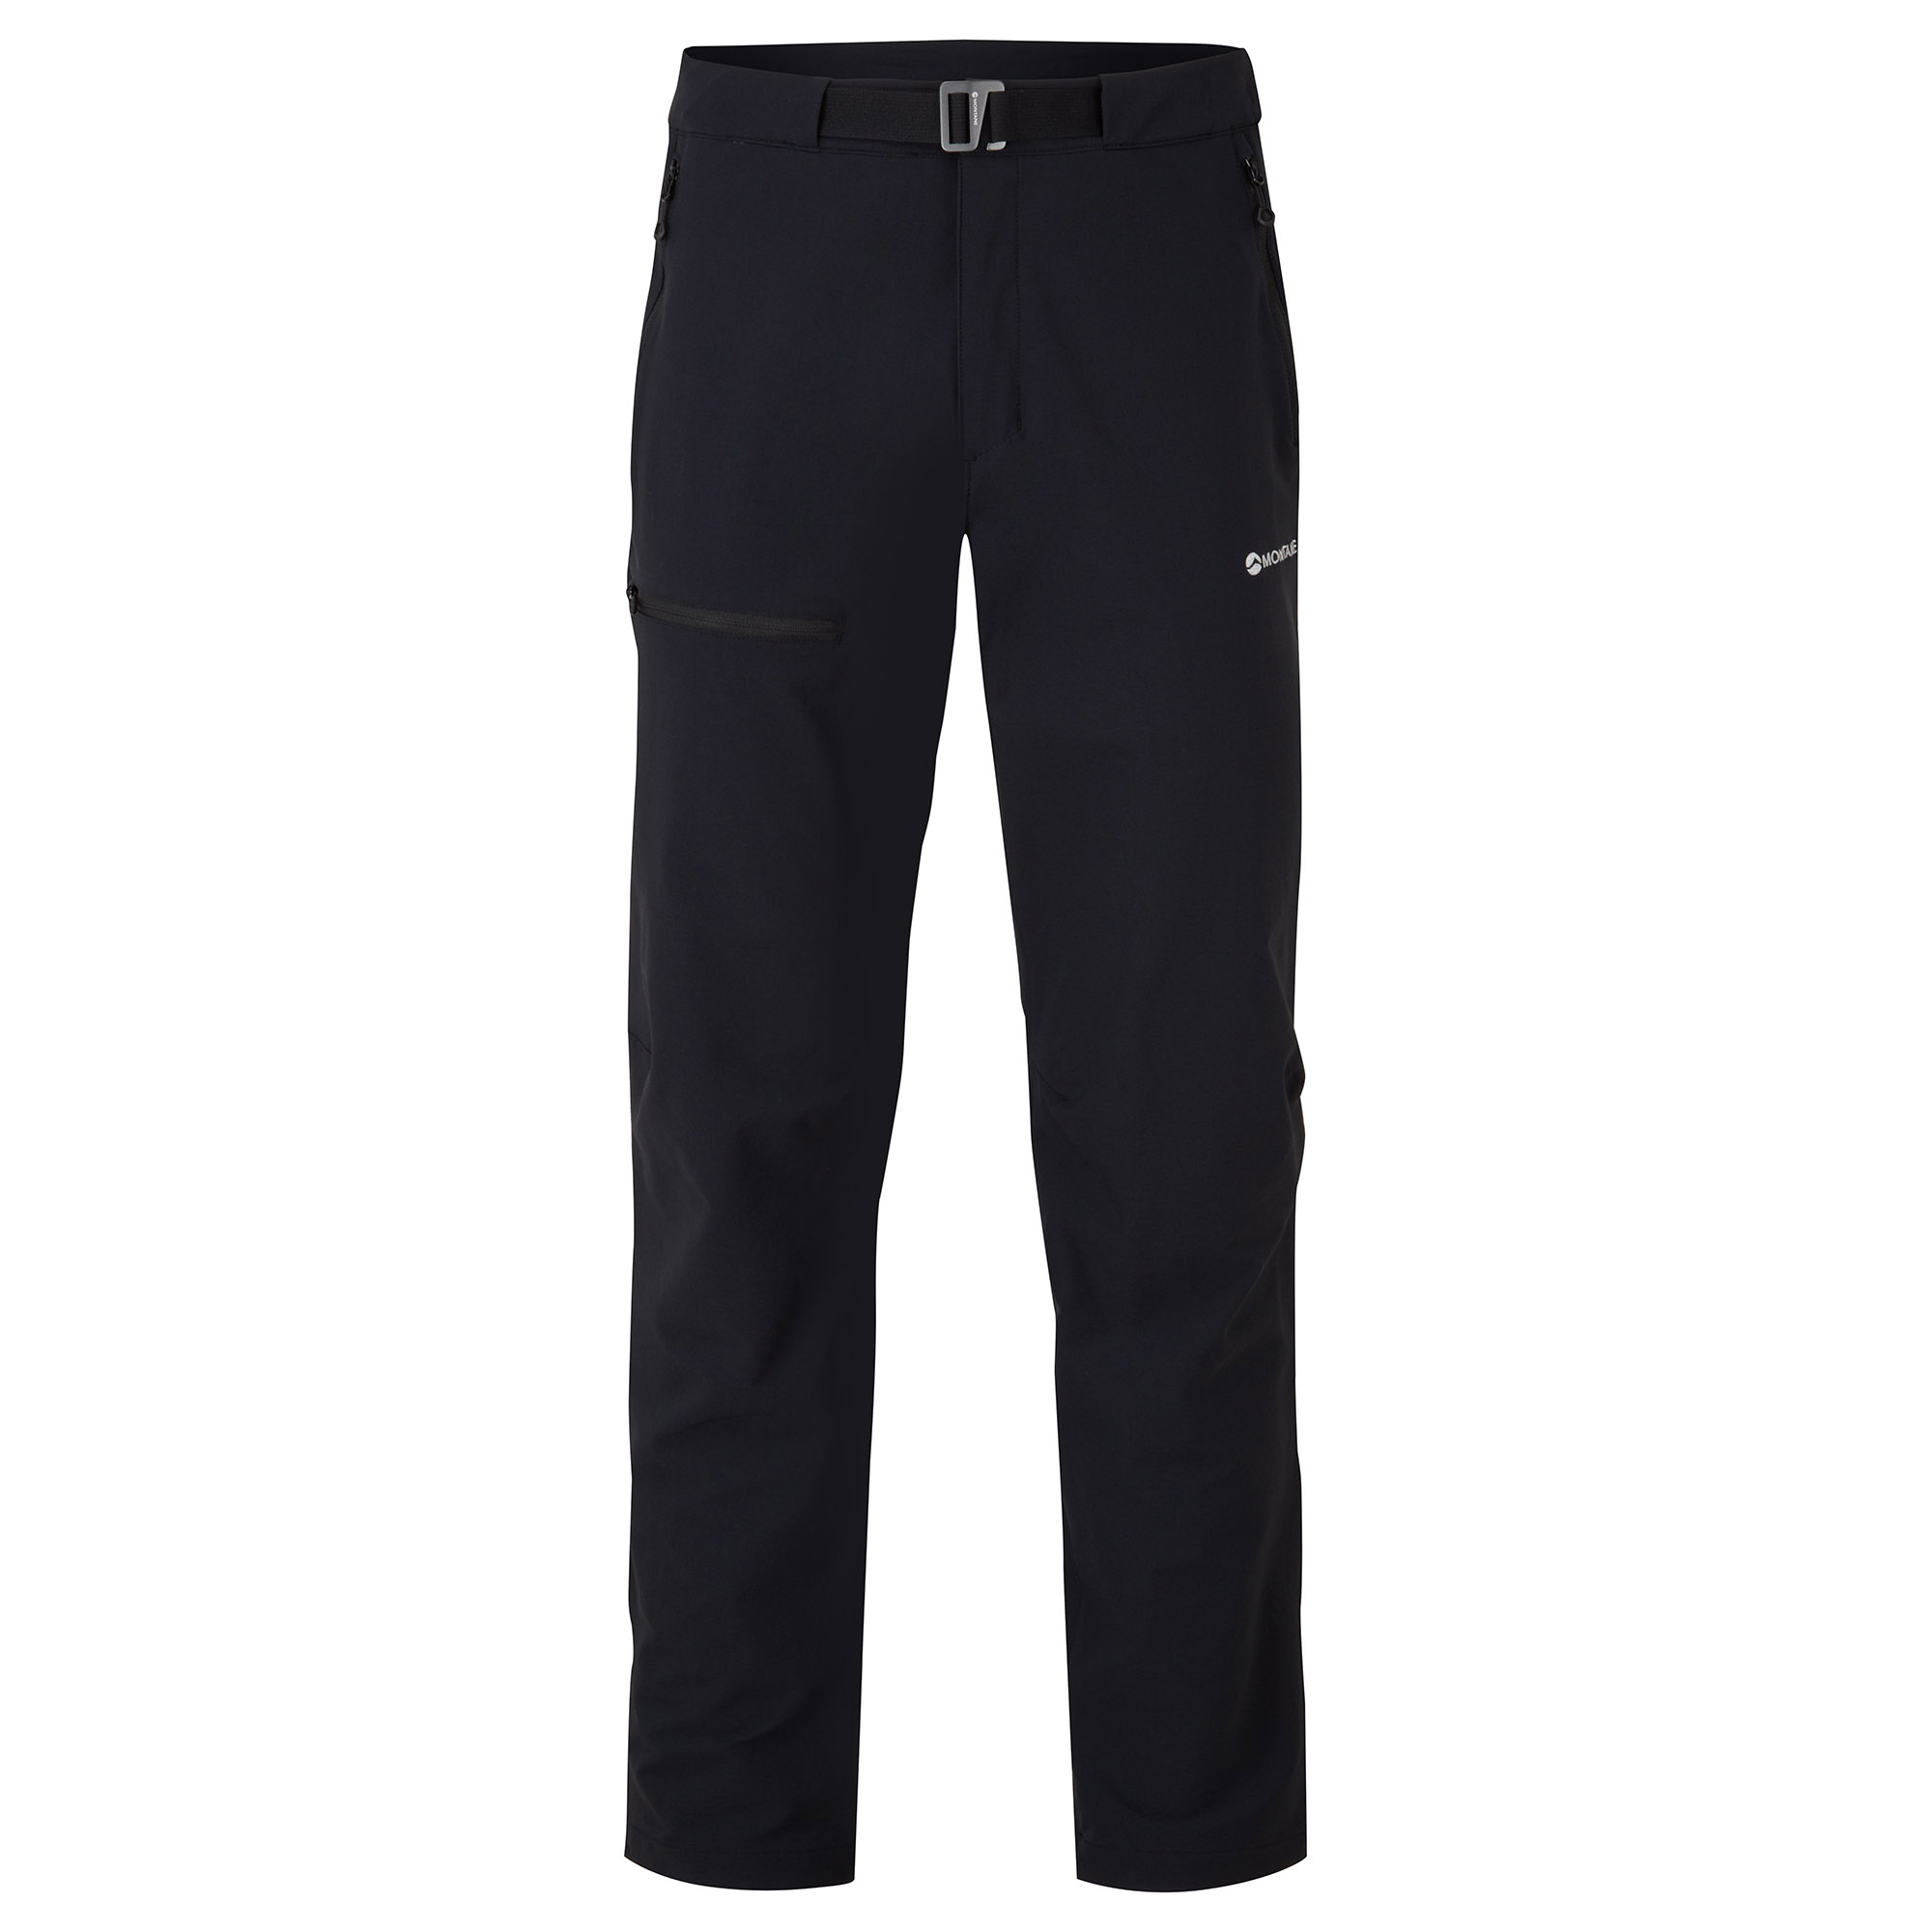 Montane pánské softshellové kalhoty Tenacity Pants - Prodloužené Nohavice Barva: black, Velikost: 36